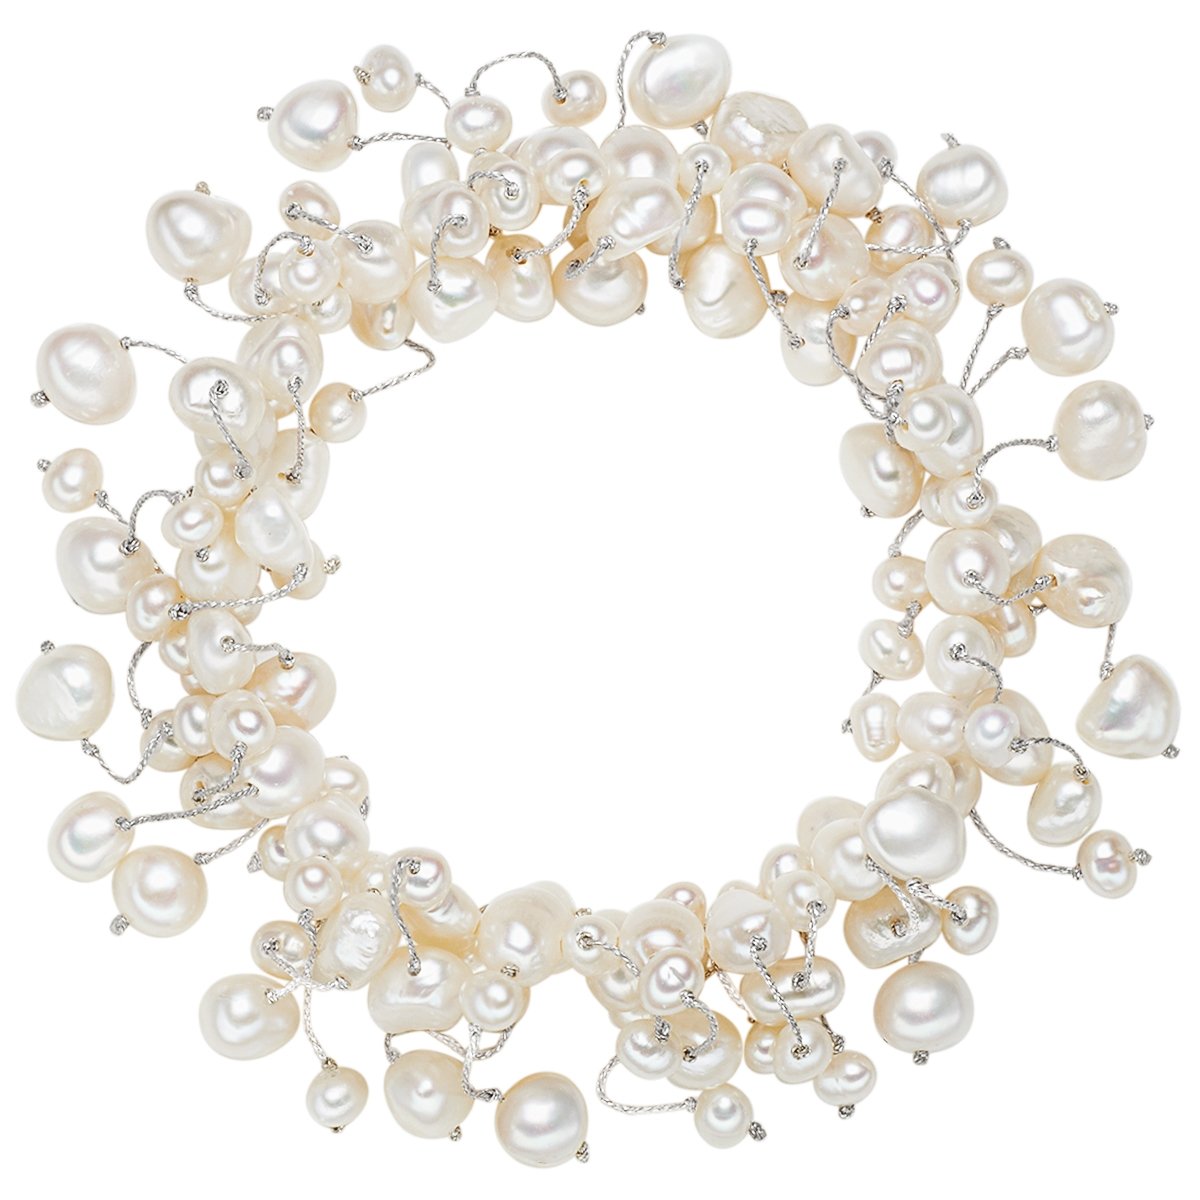 Valero Pearls Damen-Armband elastisch Hochwertige Süßwasser-Zuchtperlen in ca. 4-6 mm Barock weiß 19 cm - Perlenarmband mit echten Perlen 120320